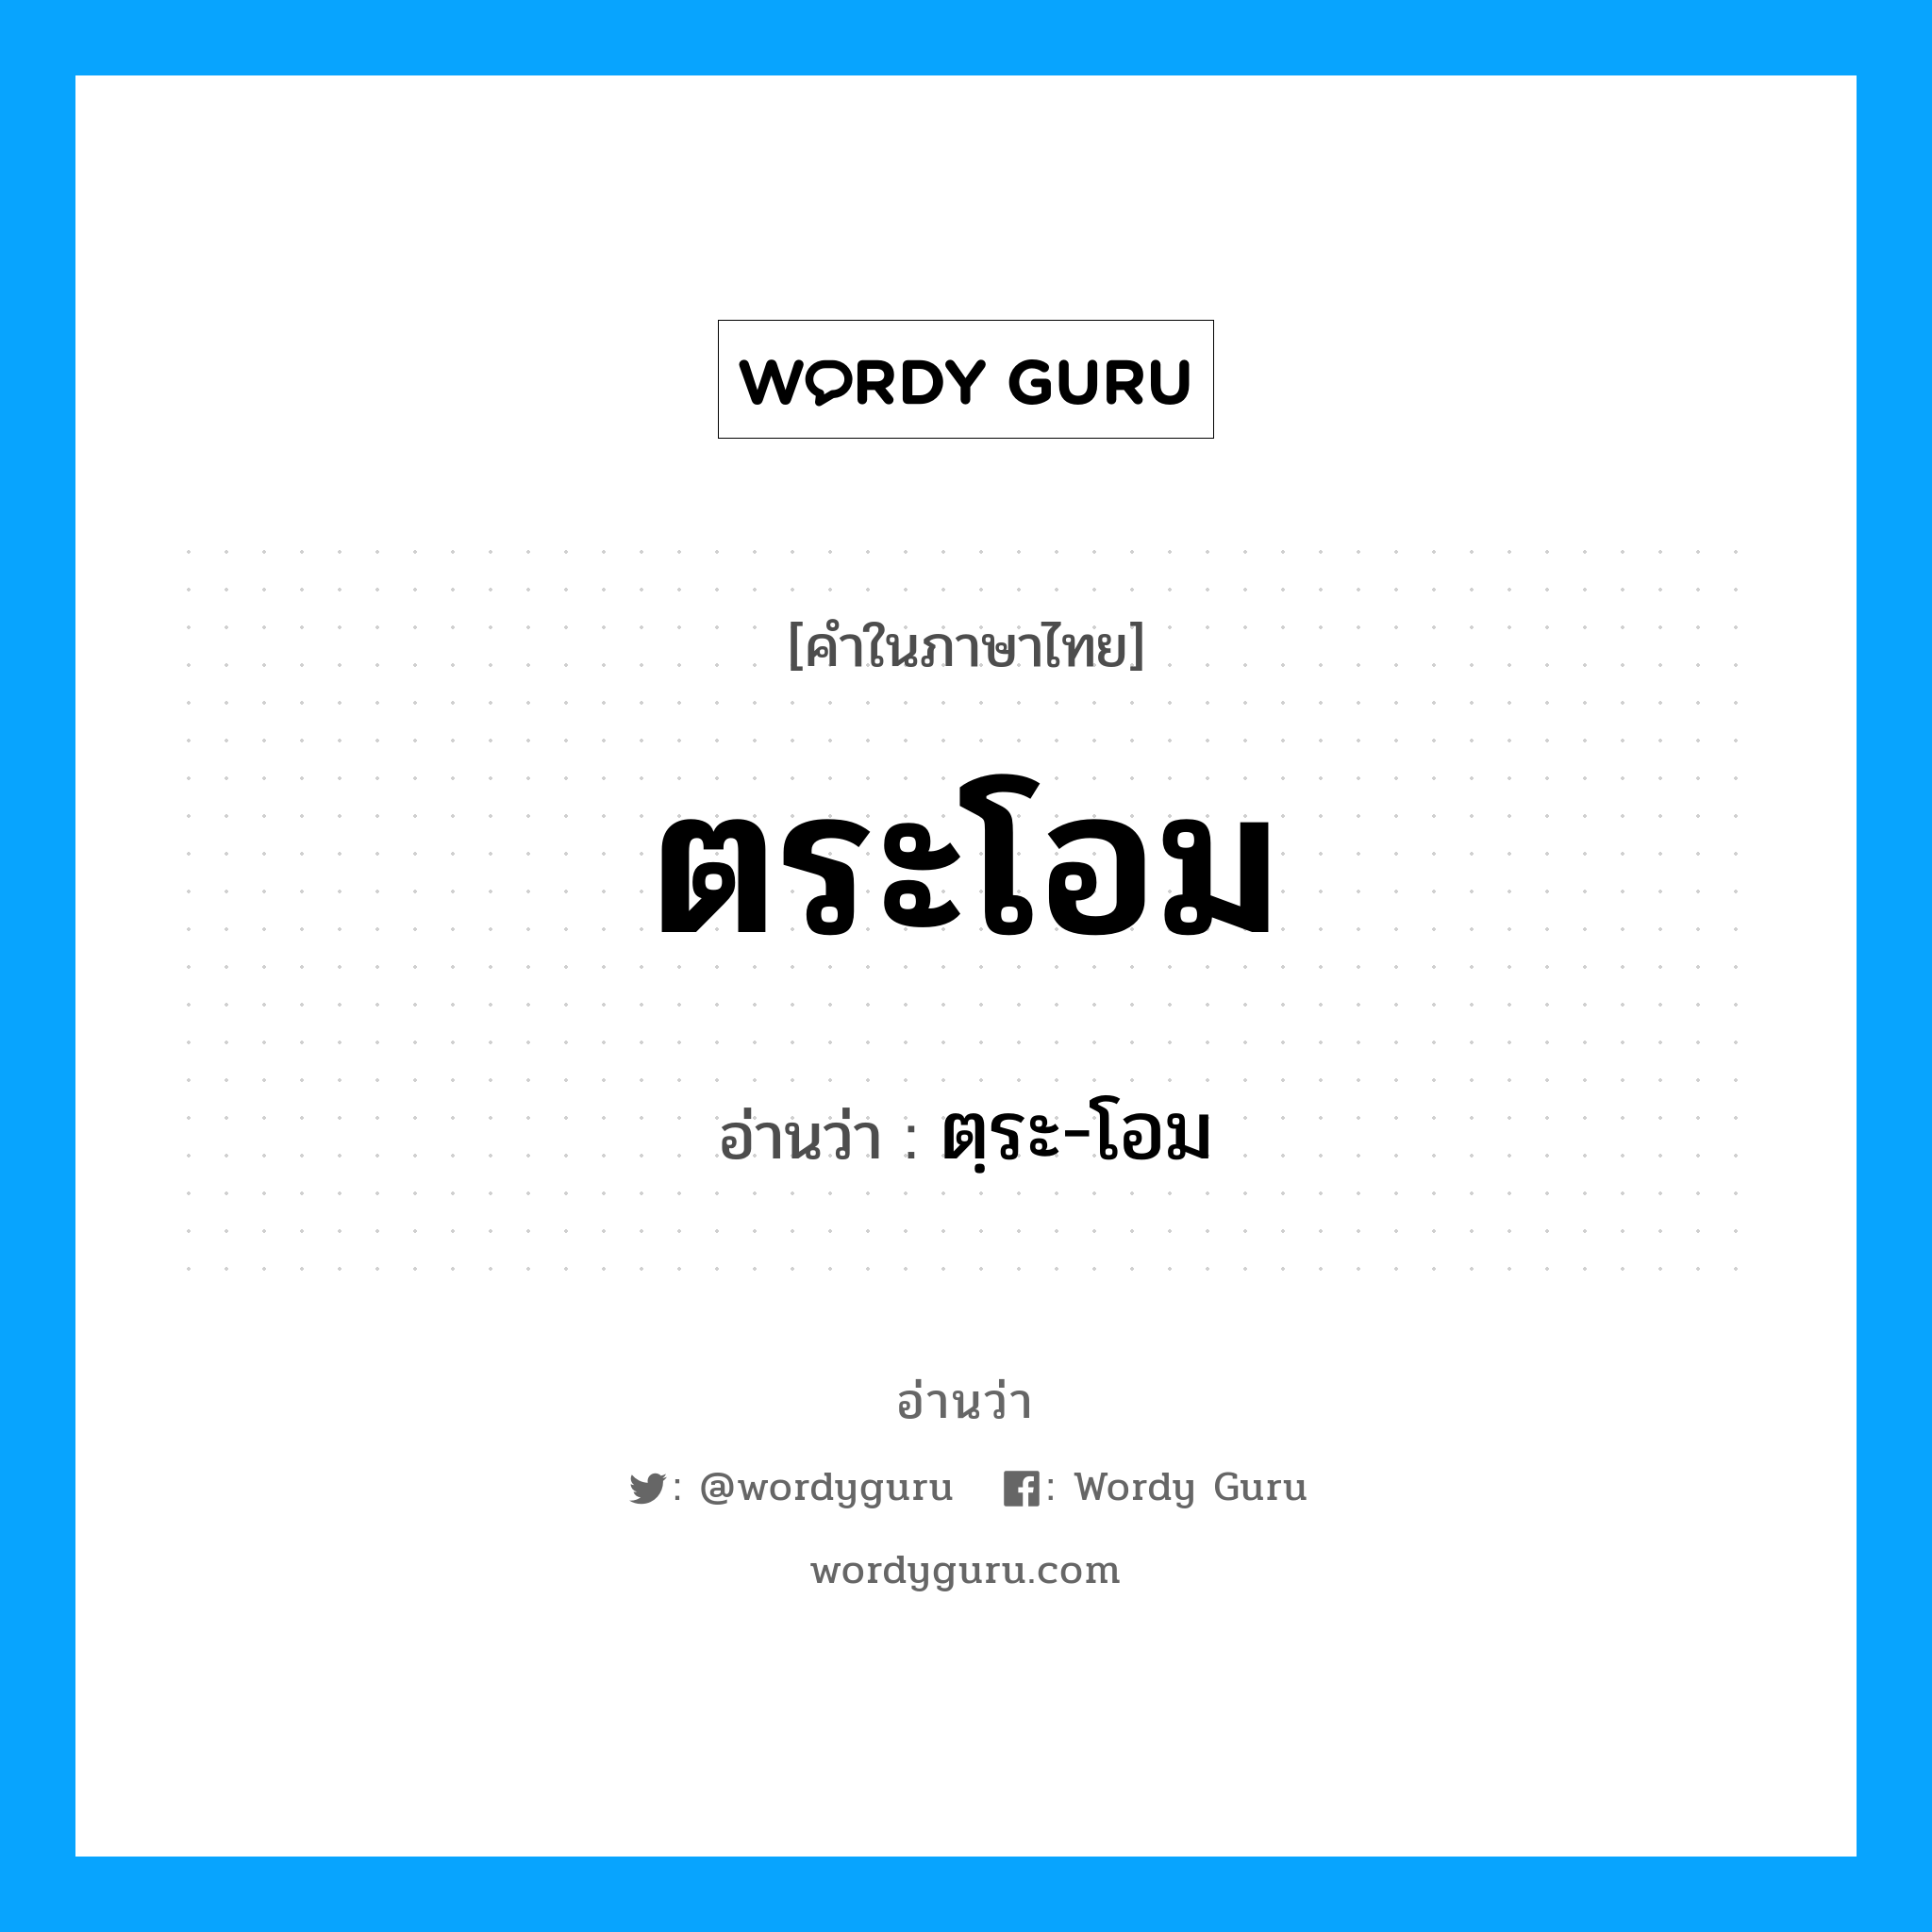 ตฺระ-โอม เป็นคำอ่านของคำไหน?, คำในภาษาไทย ตฺระ-โอม อ่านว่า ตระโอม